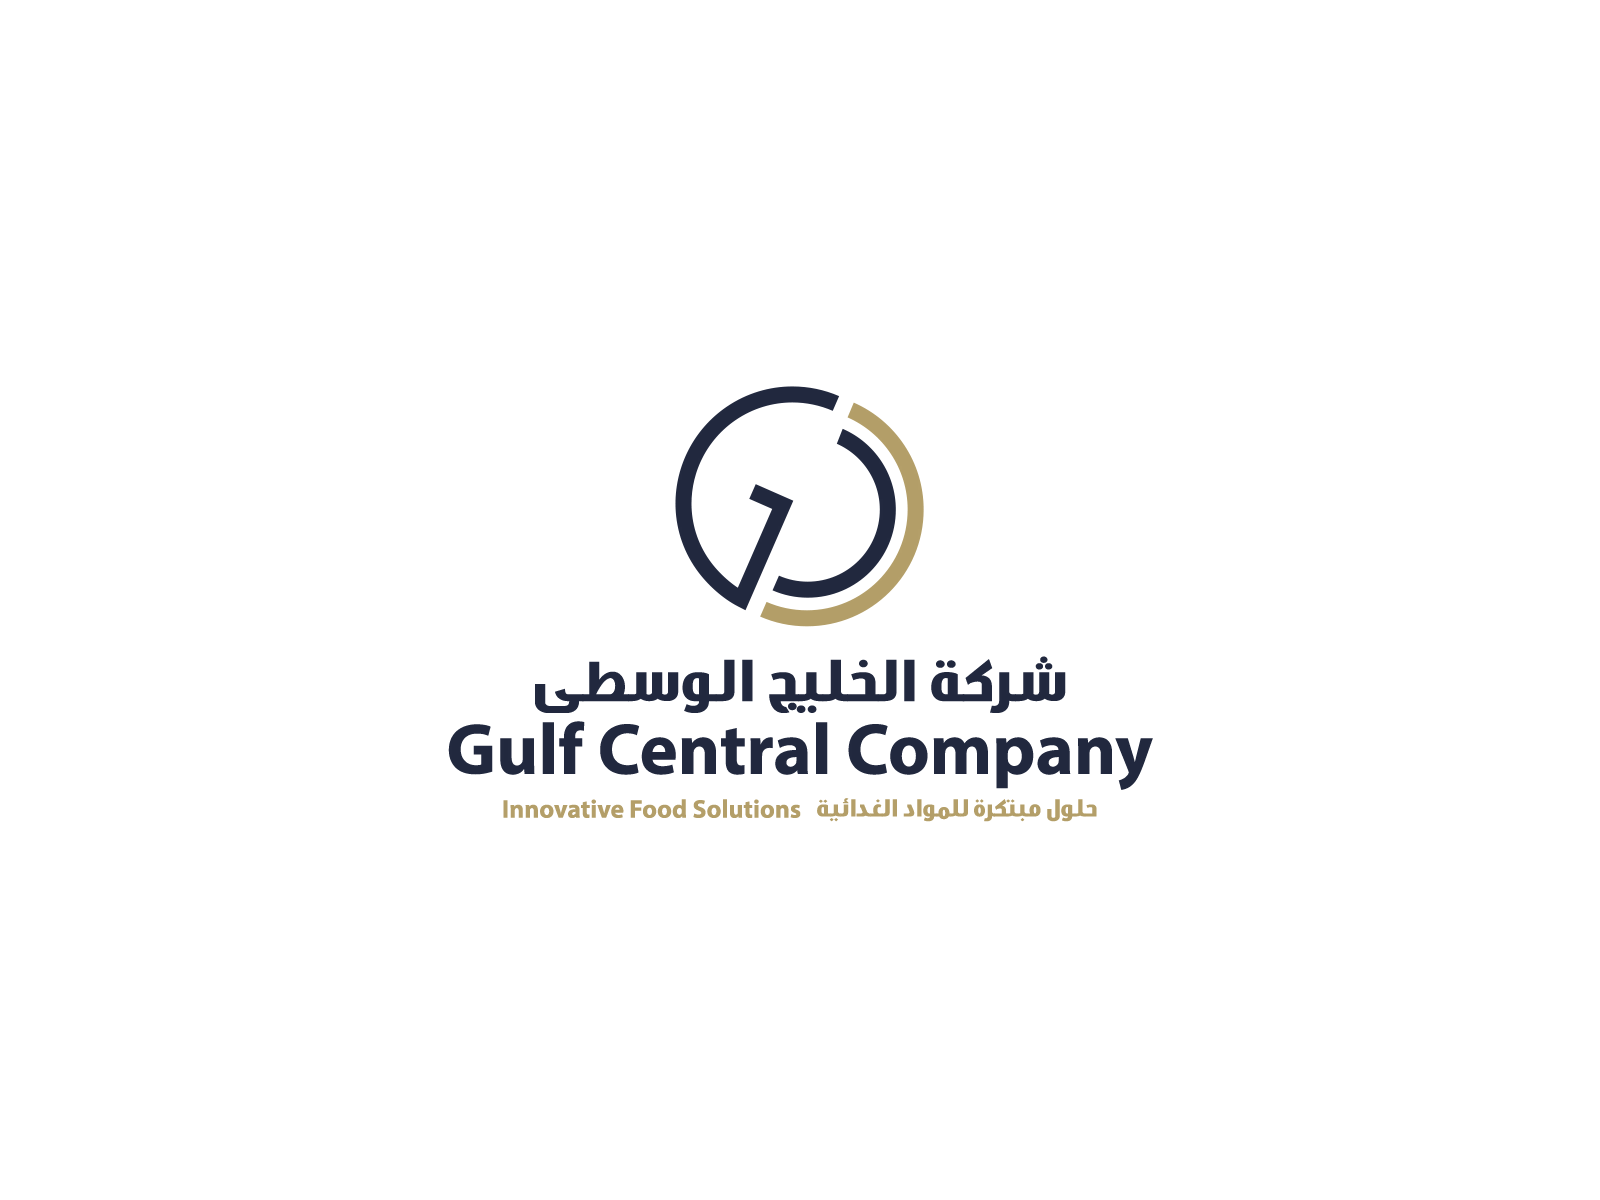 Gulf Central Company